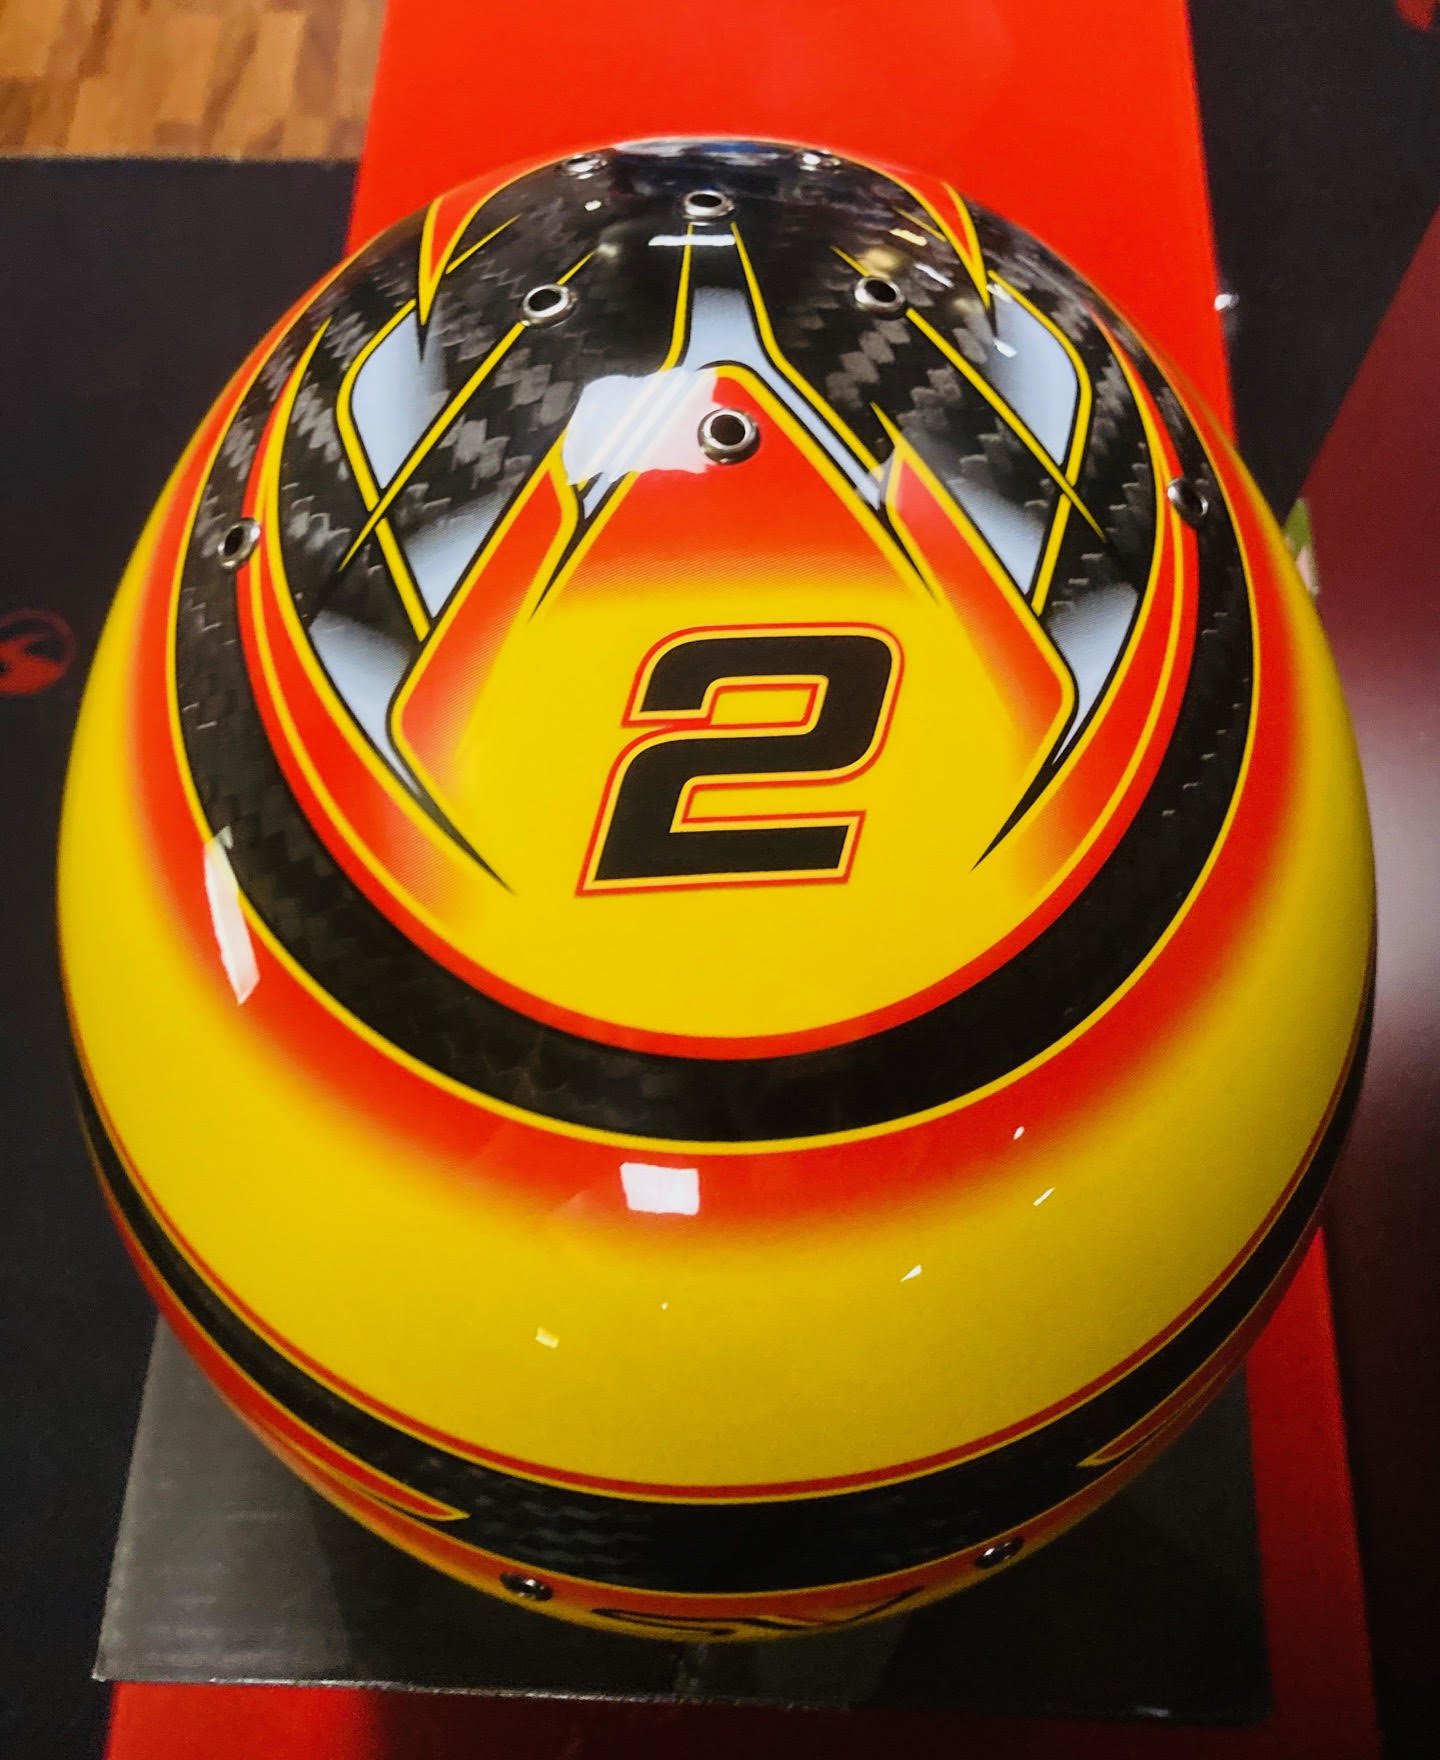 Bell Helmets F1 Replica Helmet 1:1 Stoffel Vandoorne 2018